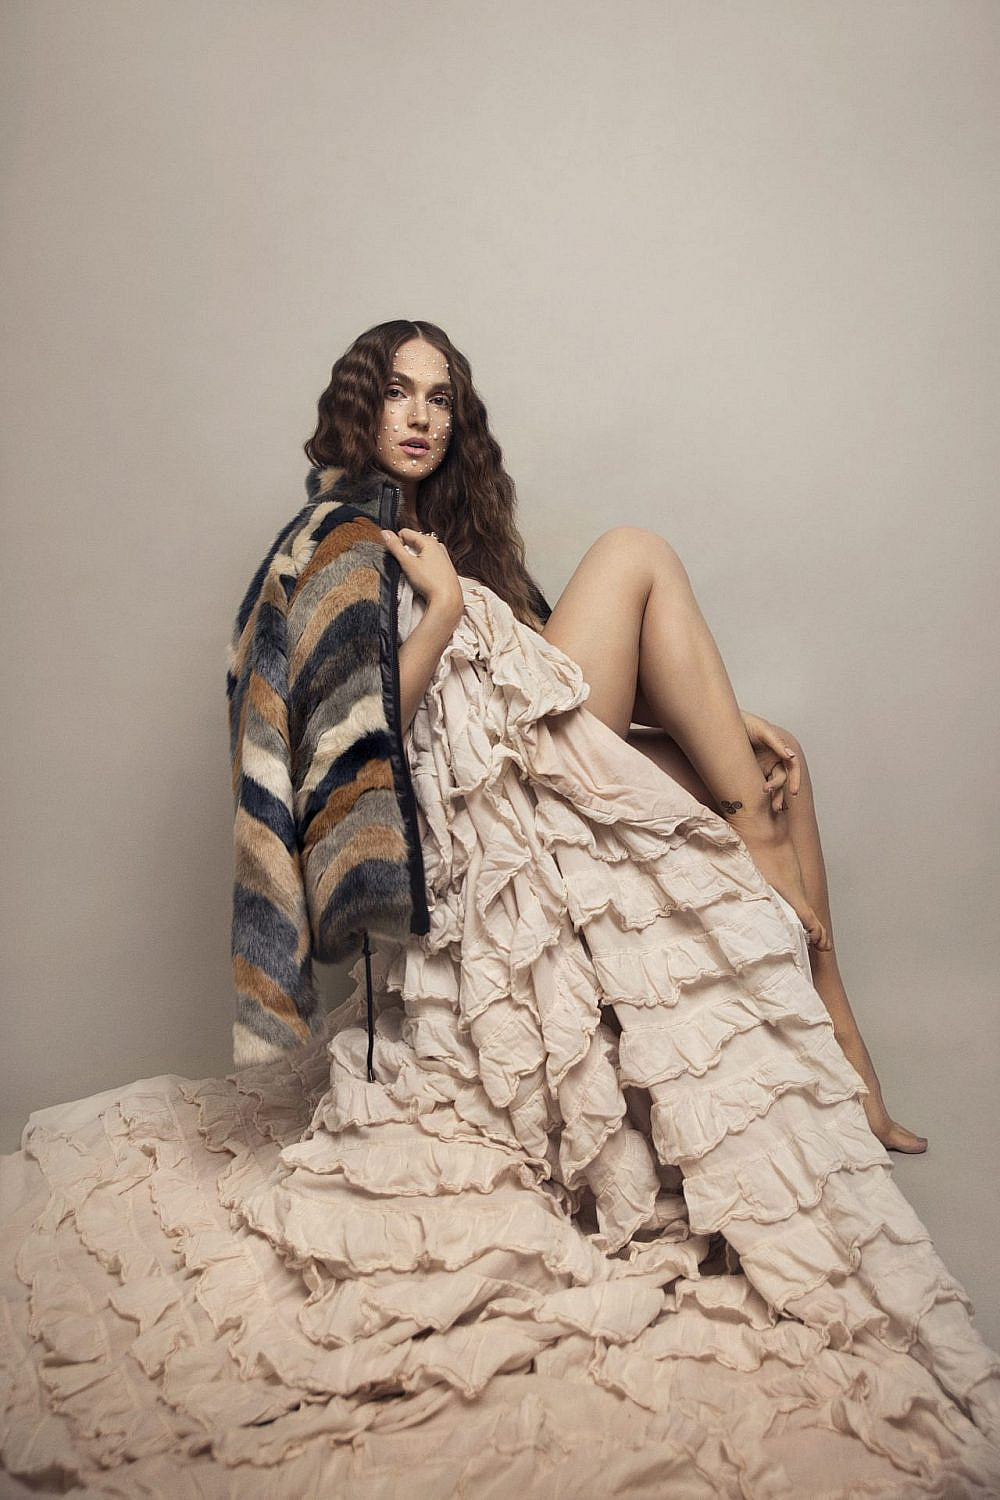 מארינה מקסימיליאן | צילום: רותם לבל ל־ArtBook, סטיילינג יולי סגרדה. מעיל: קרייזי ליין, שמלה: אוסף פרטי